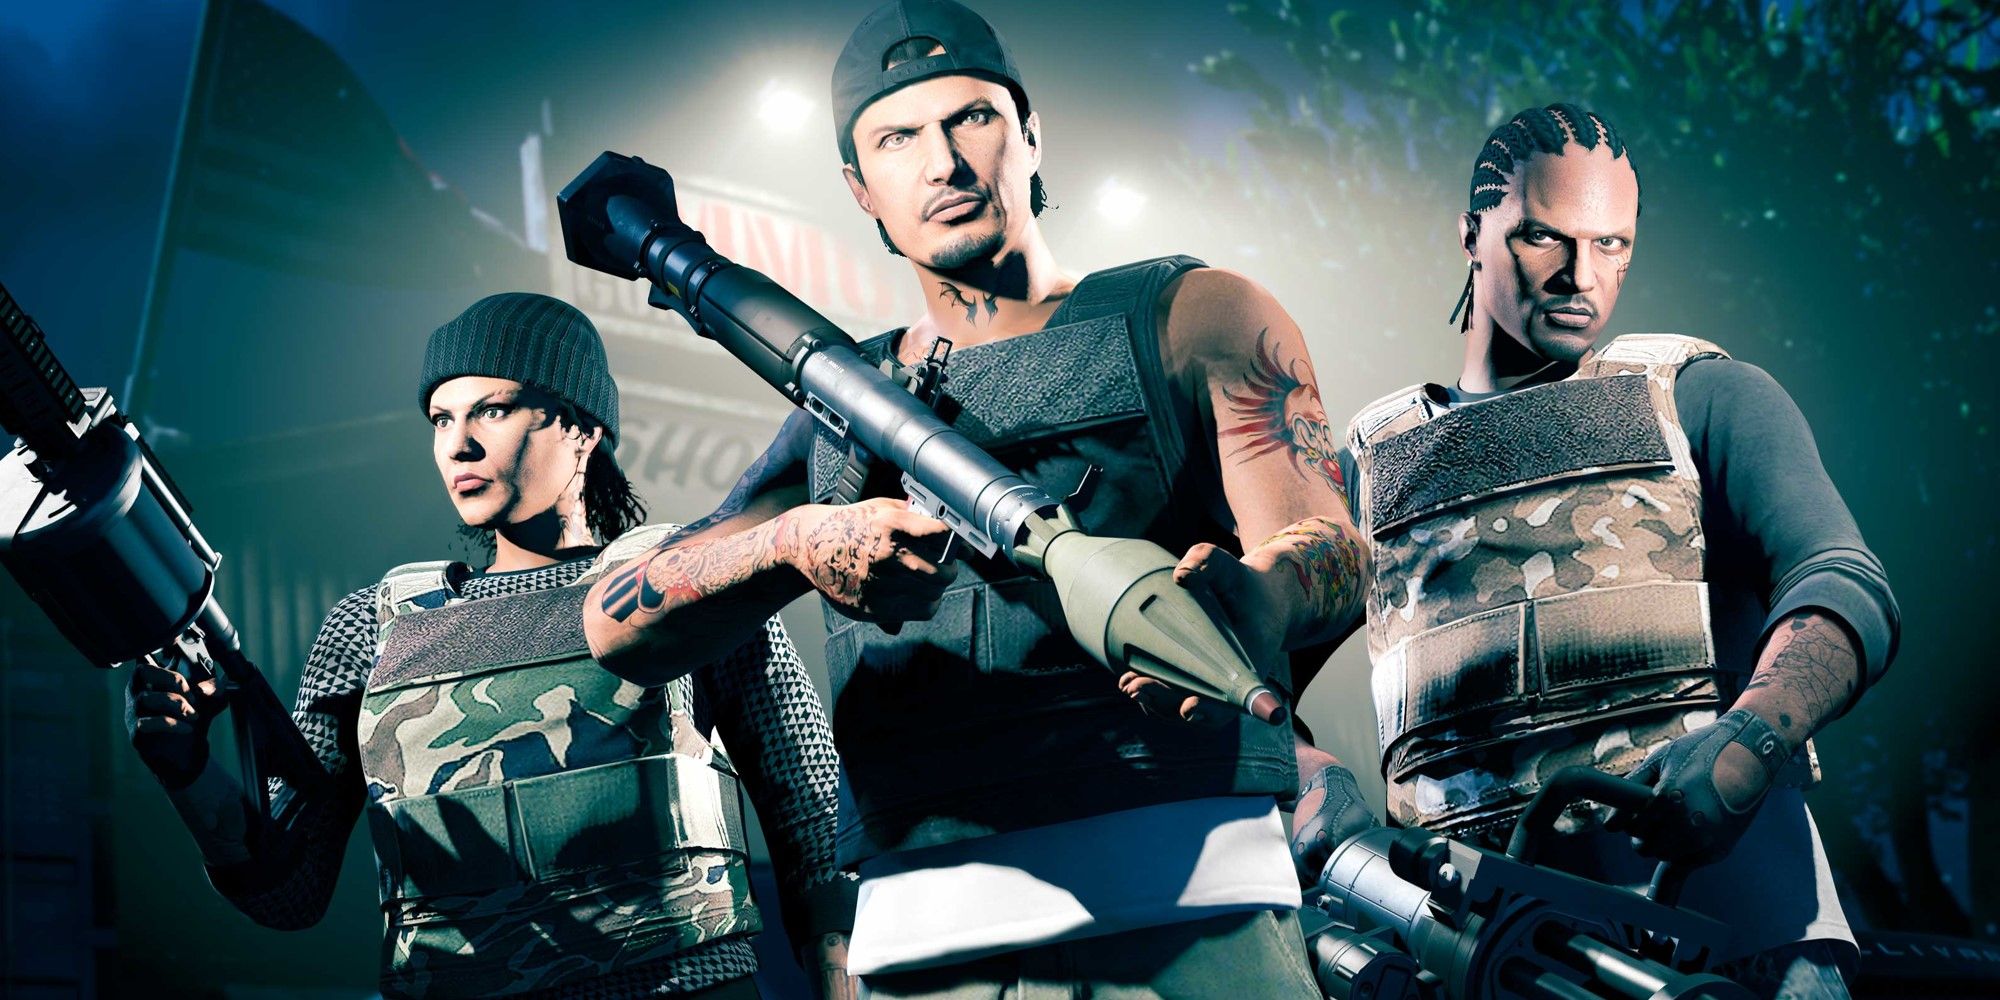 GTA Online: San Andreas Mercenaries Update - Leaked Halloween